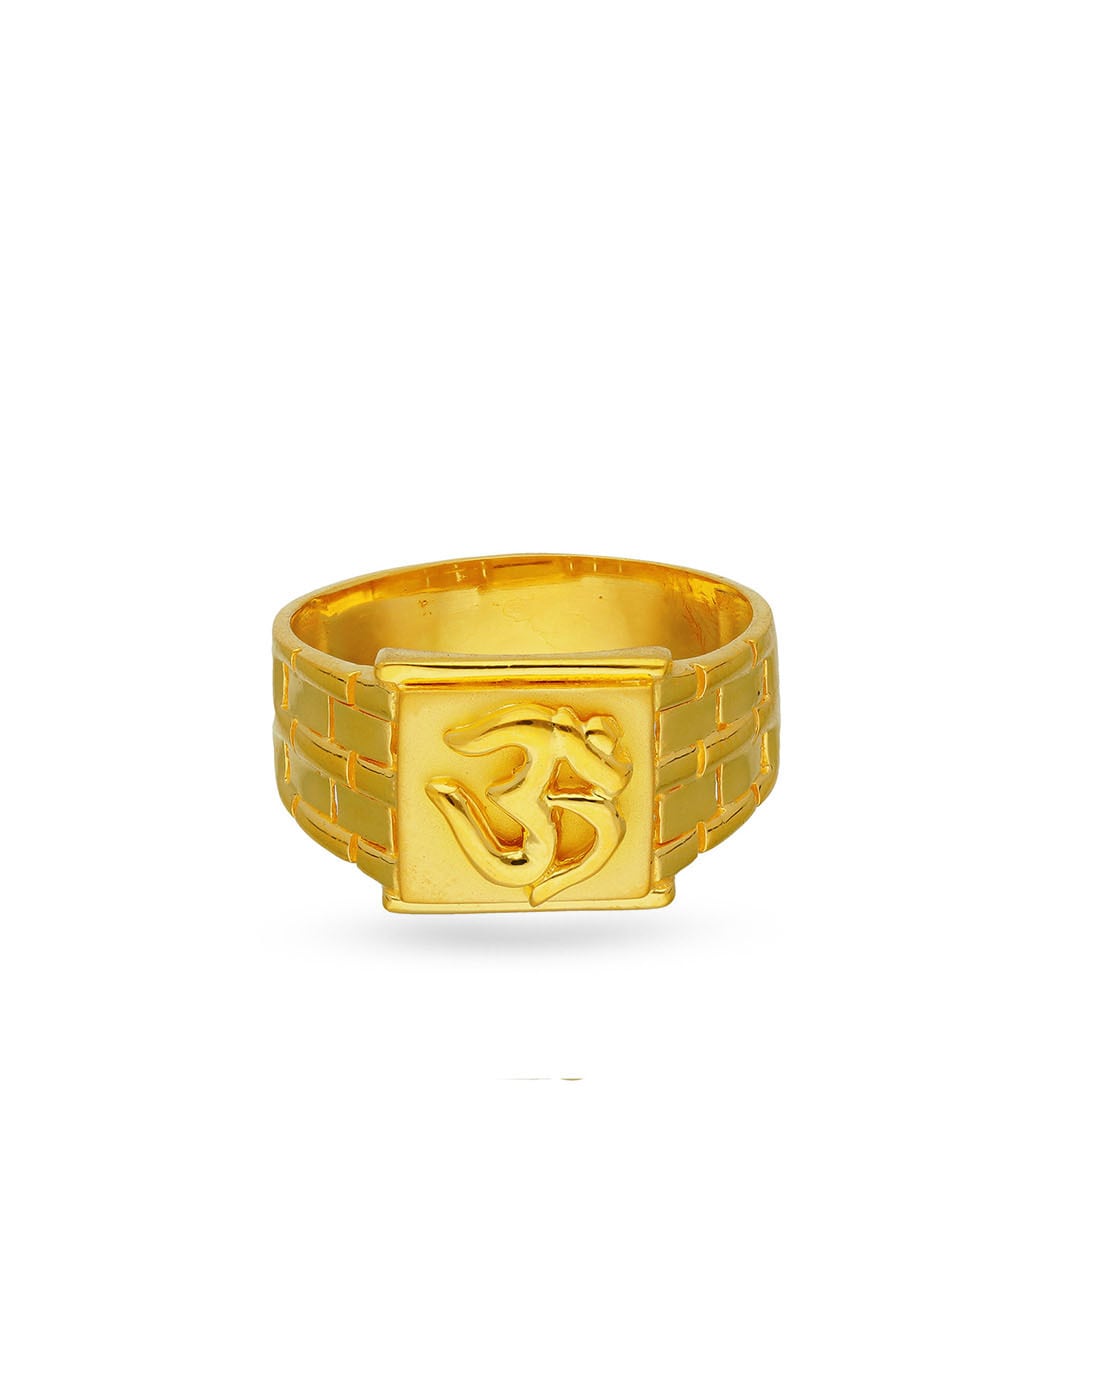 meteoor Bewolkt Rennen Buy Gold Rings for Men by Reliance Jewels Online | Ajio.com